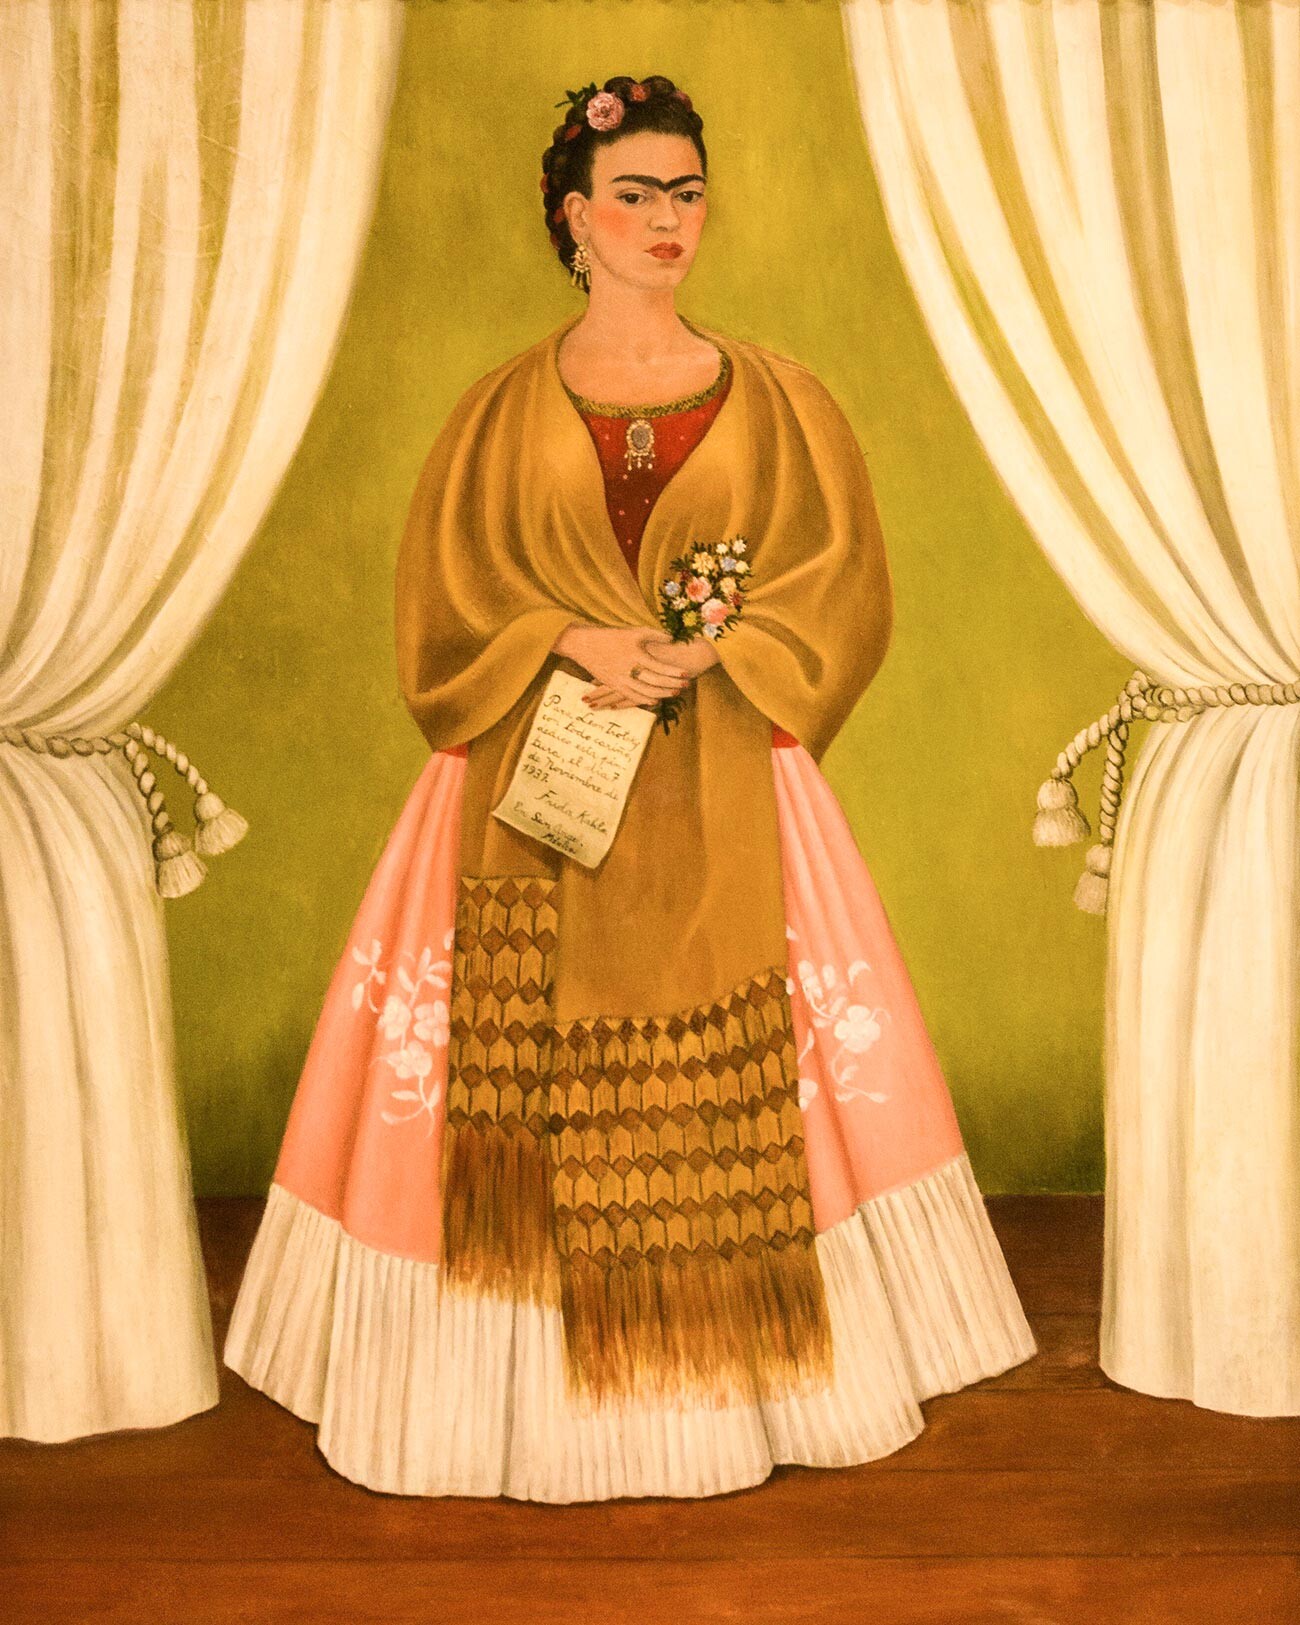 Frida Kahlo, “Autoritratto” dipinto nel 1937 e donato a Lev Trotskij  per il suo compleanno. Lui però non lo portò con sé, lasciandolo nella casa di Diego Rivera